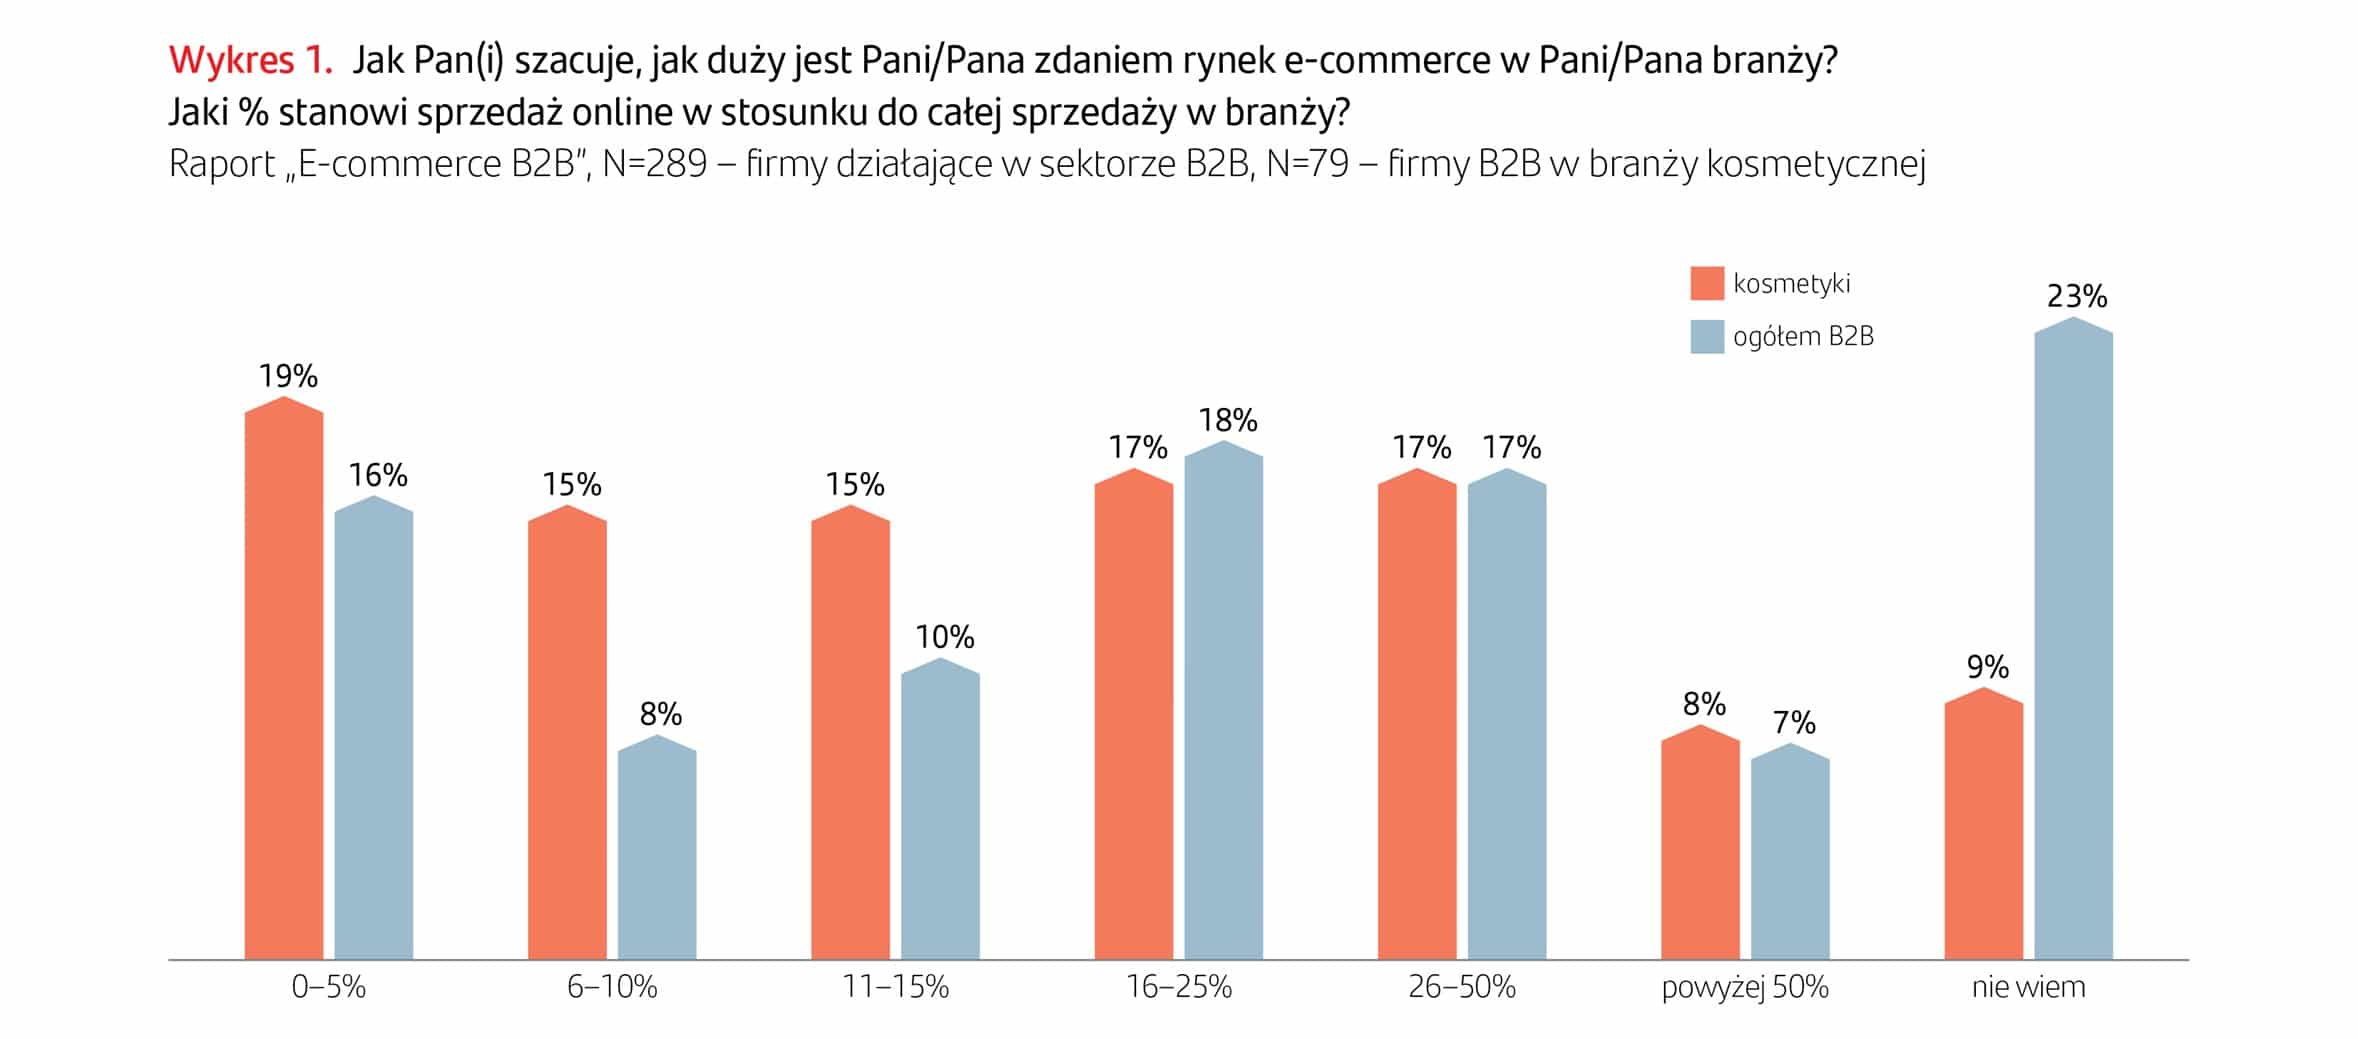 Znaczenie e-commerce B2B jest niewielkie, ale szybko rośnie